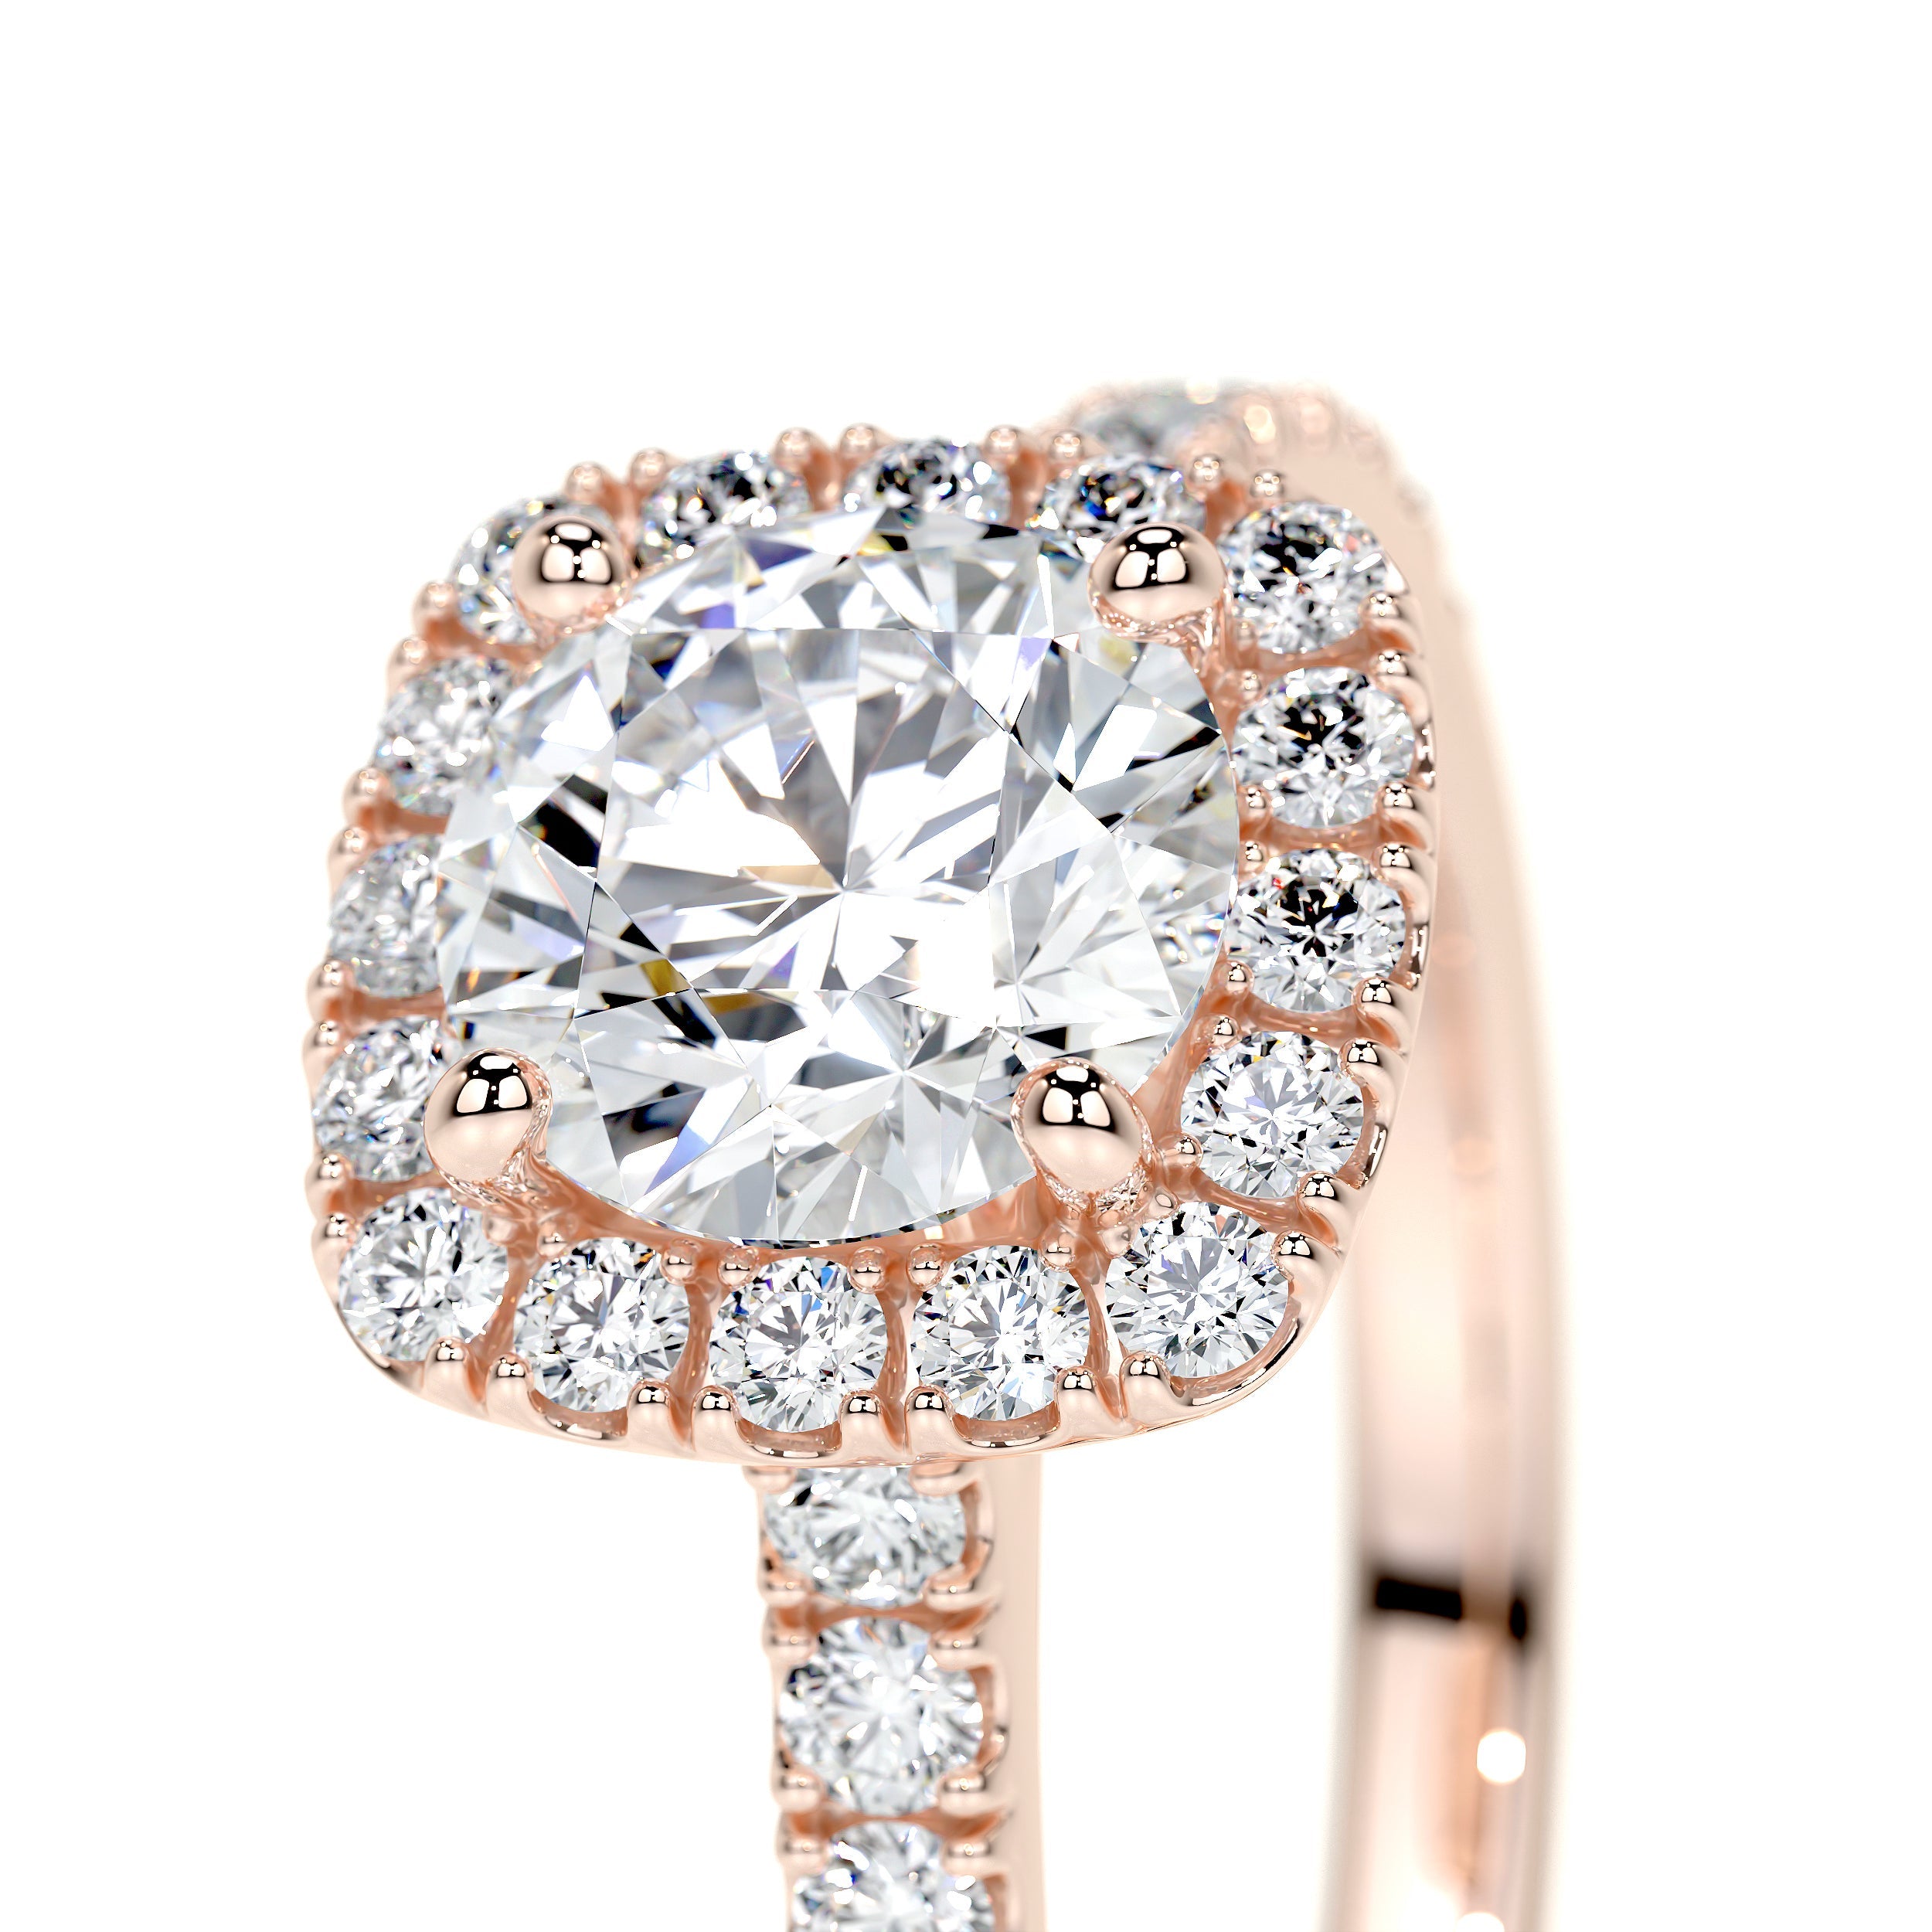 Claudia Lab Grown Diamond Ring   (1.4 Carat) -14K Rose Gold